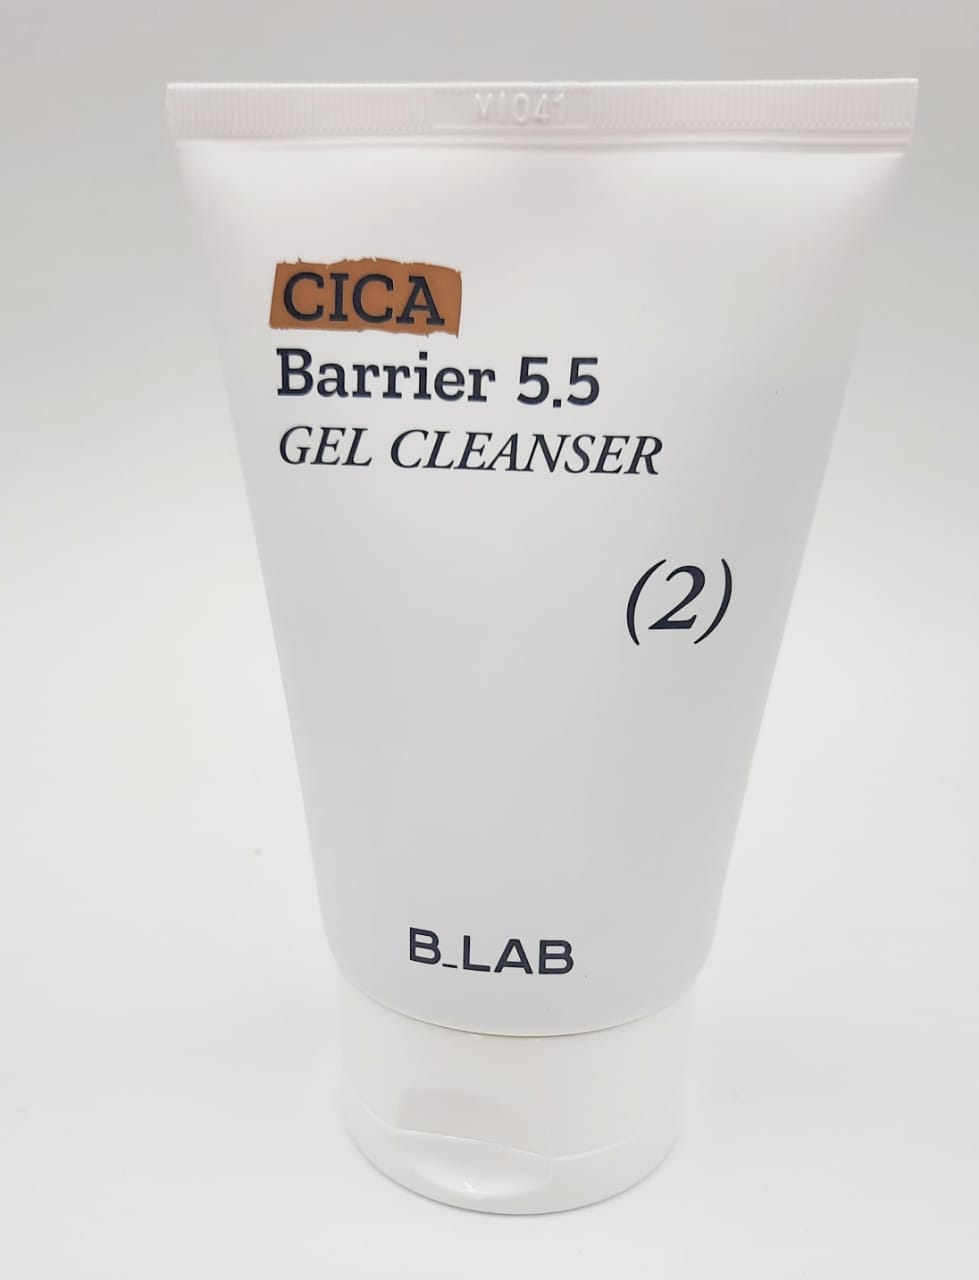 Очищающий слабокислотный гель для умывания B.Lab Cica Barrier 5.5 Gel Cleanser farmstay moisture soothing gel tomato гель увлажняющий успокаивающий многофункциональный с томатом 300 мл